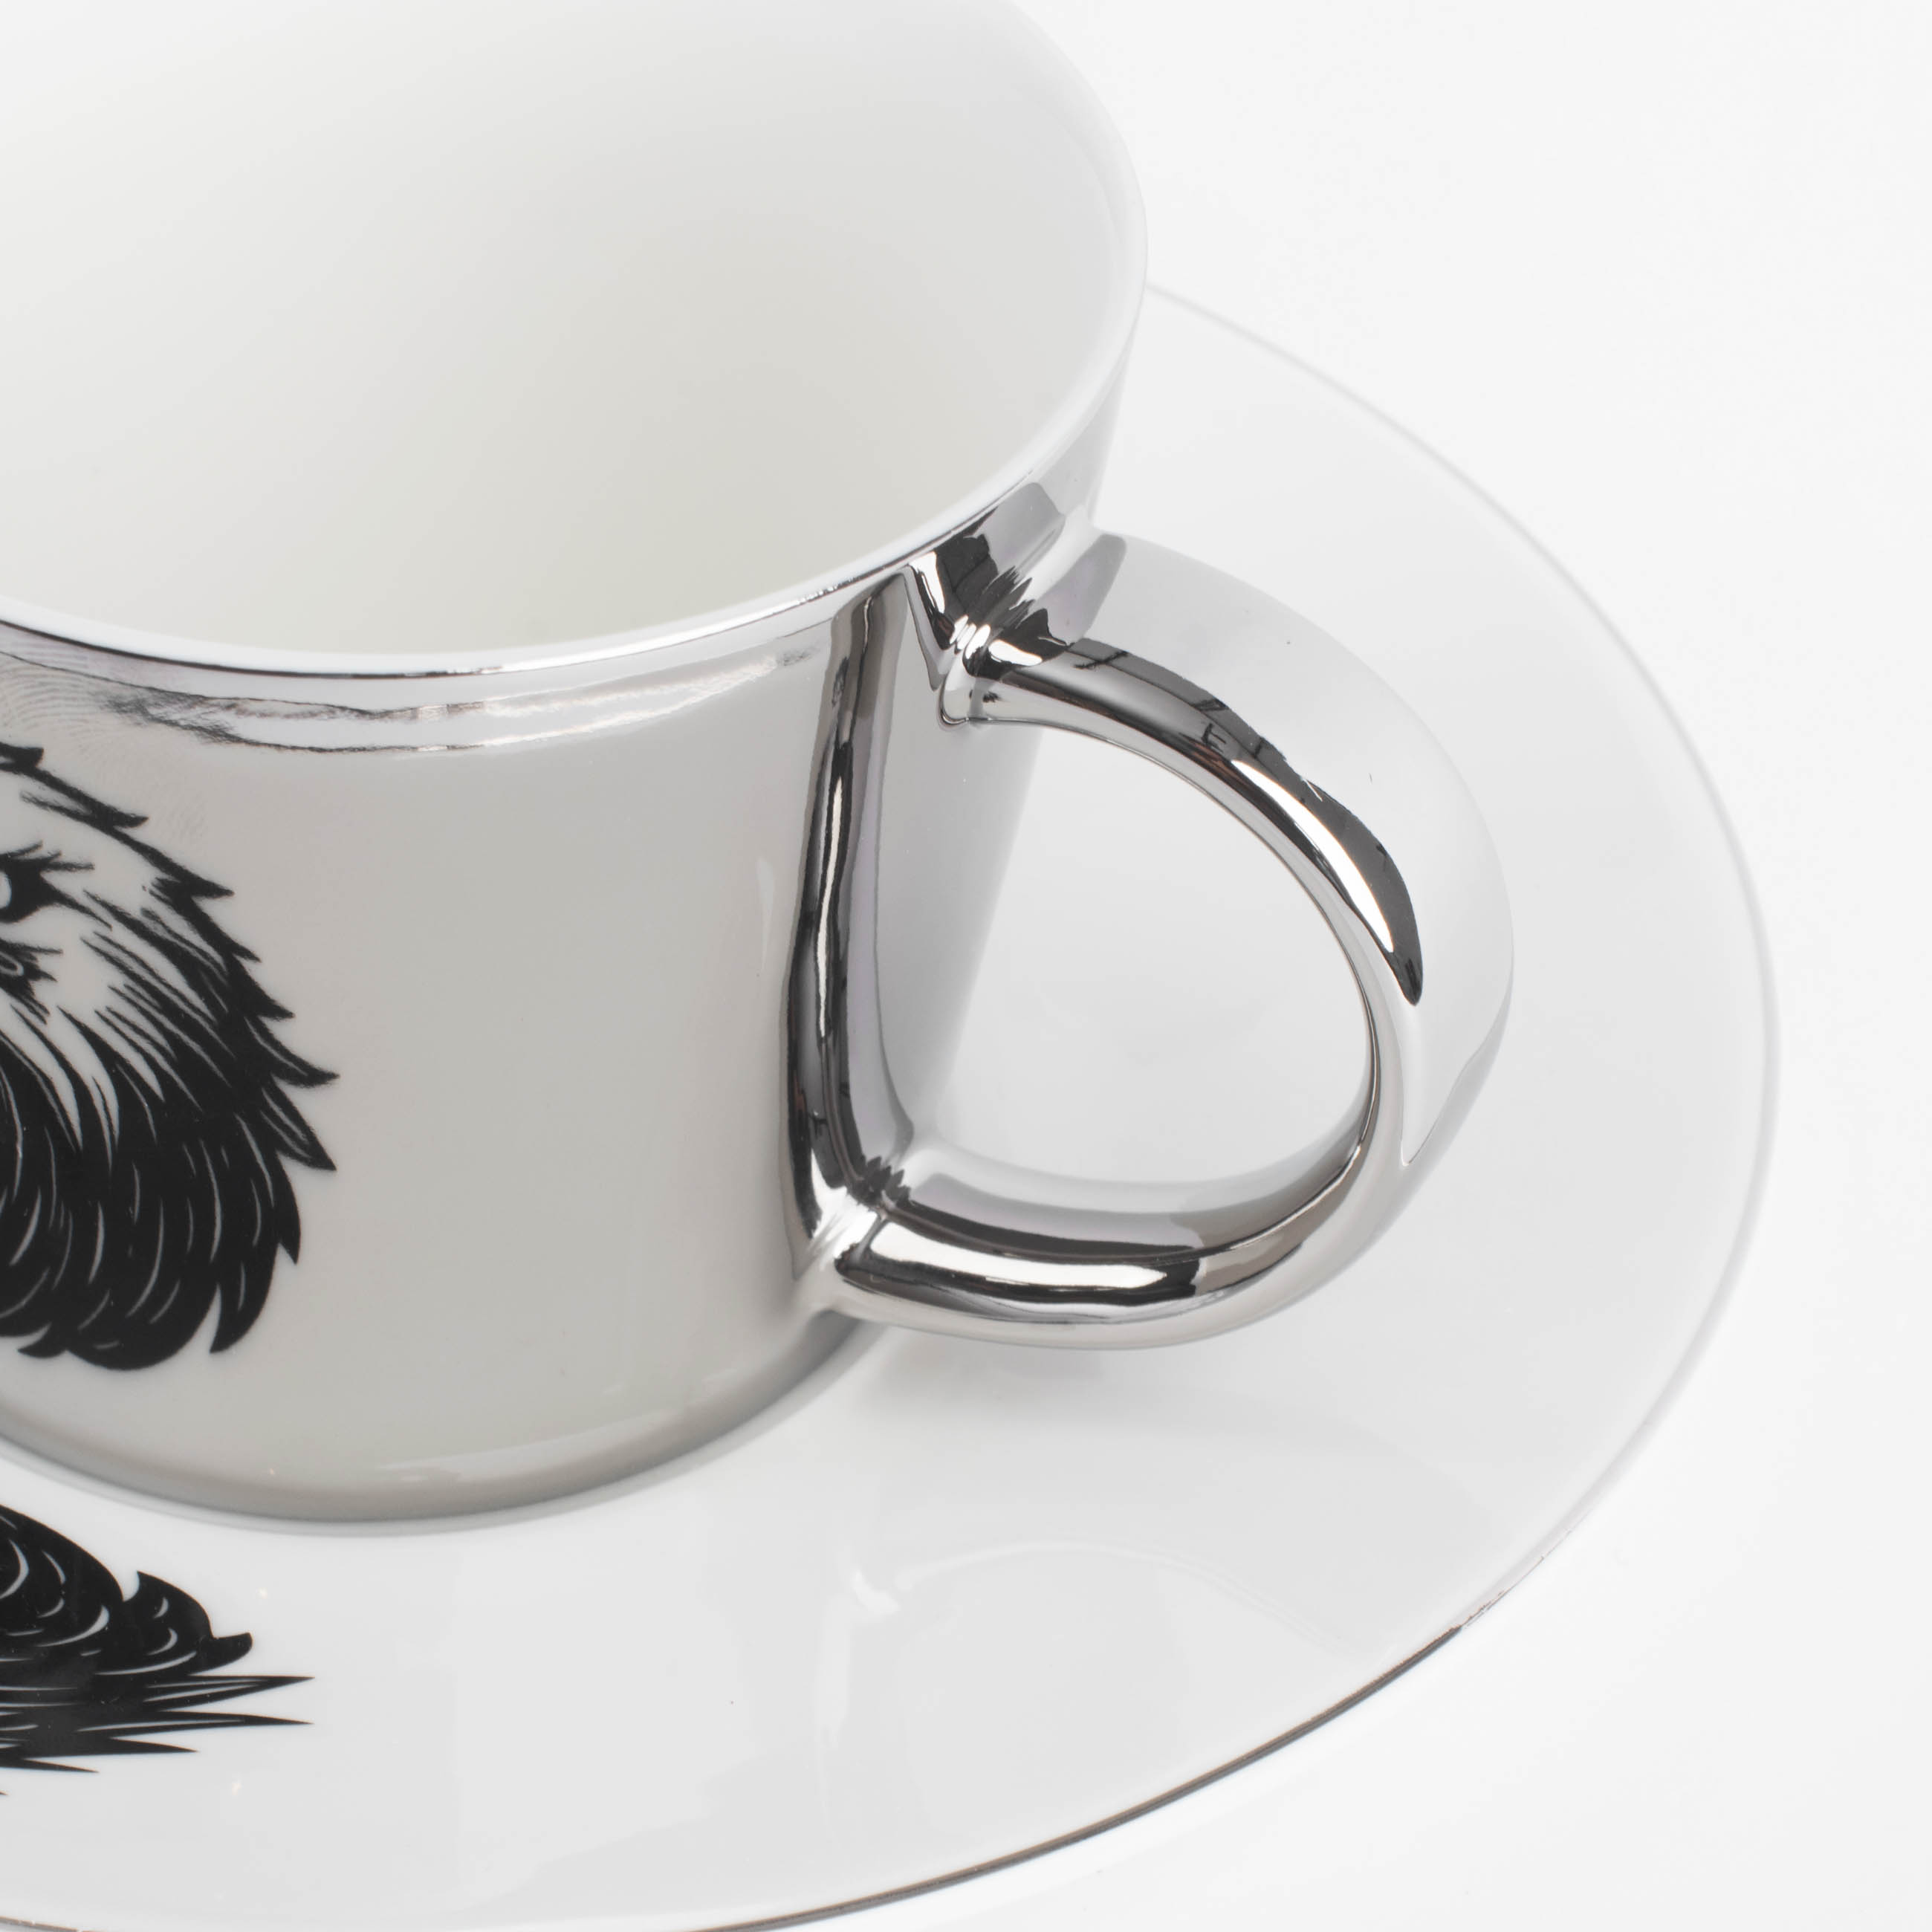 Пара чайная, 1 перс, 2 пр, 230 мл, фарфор P, бело-серебристая, Орел, Eagle изображение № 2